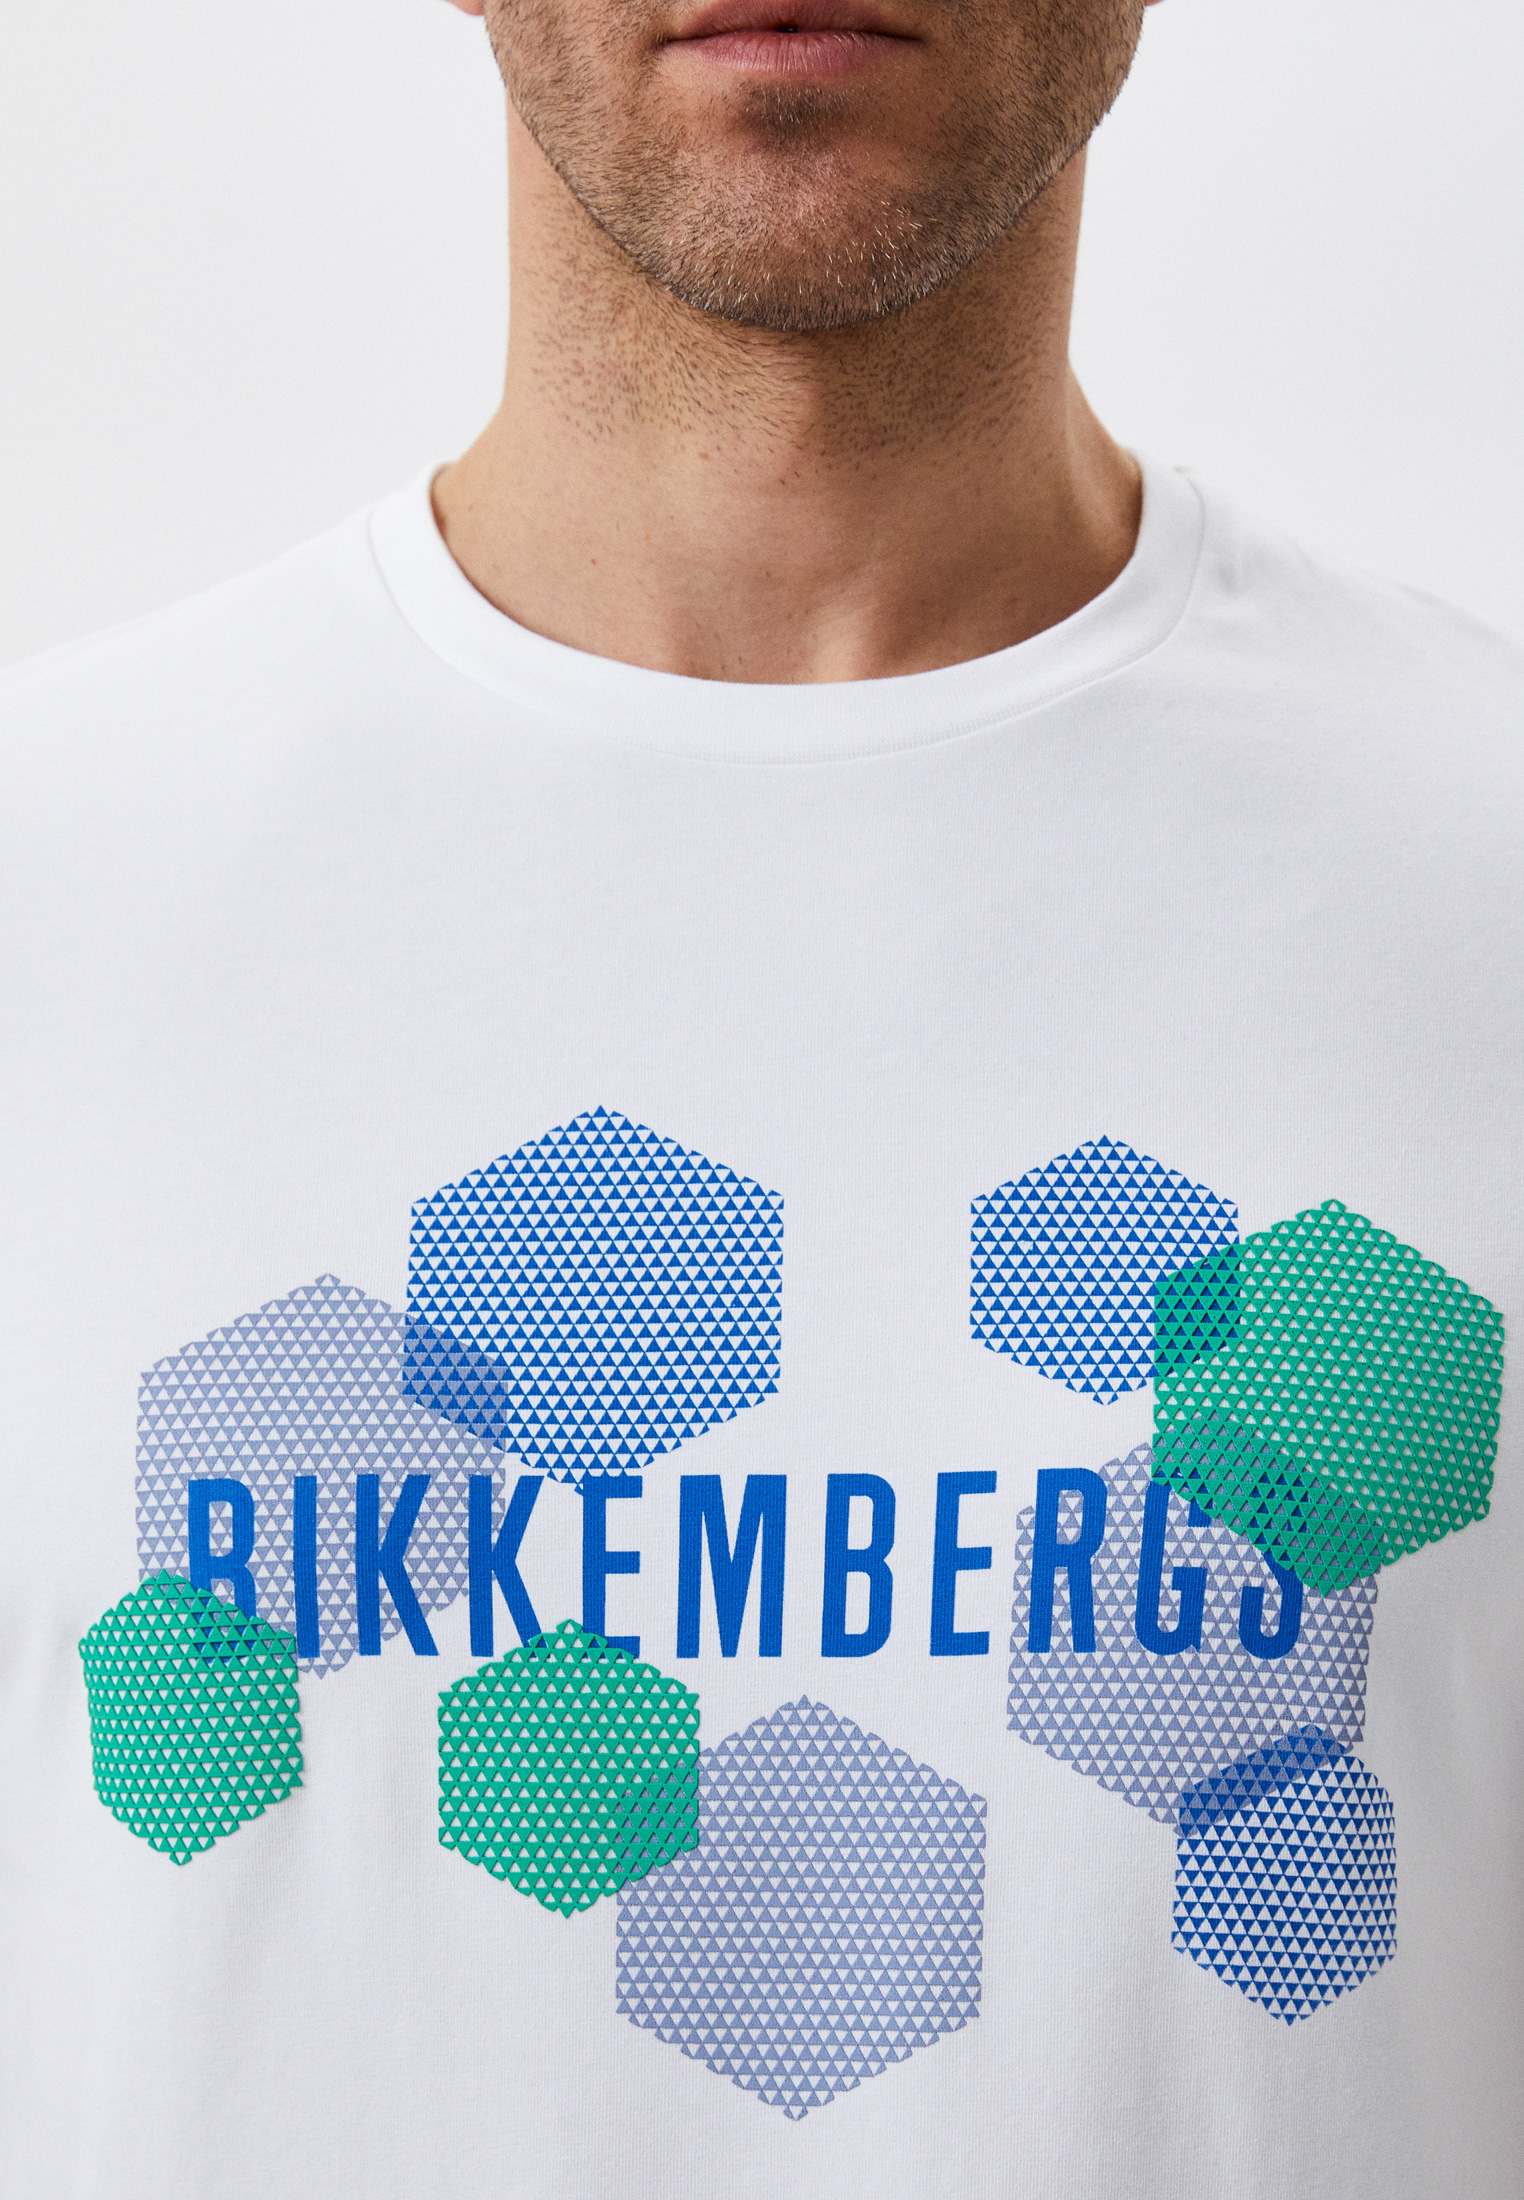 Мужская футболка Bikkembergs (Биккембергс) C 4 101 1M E 2359: изображение 4